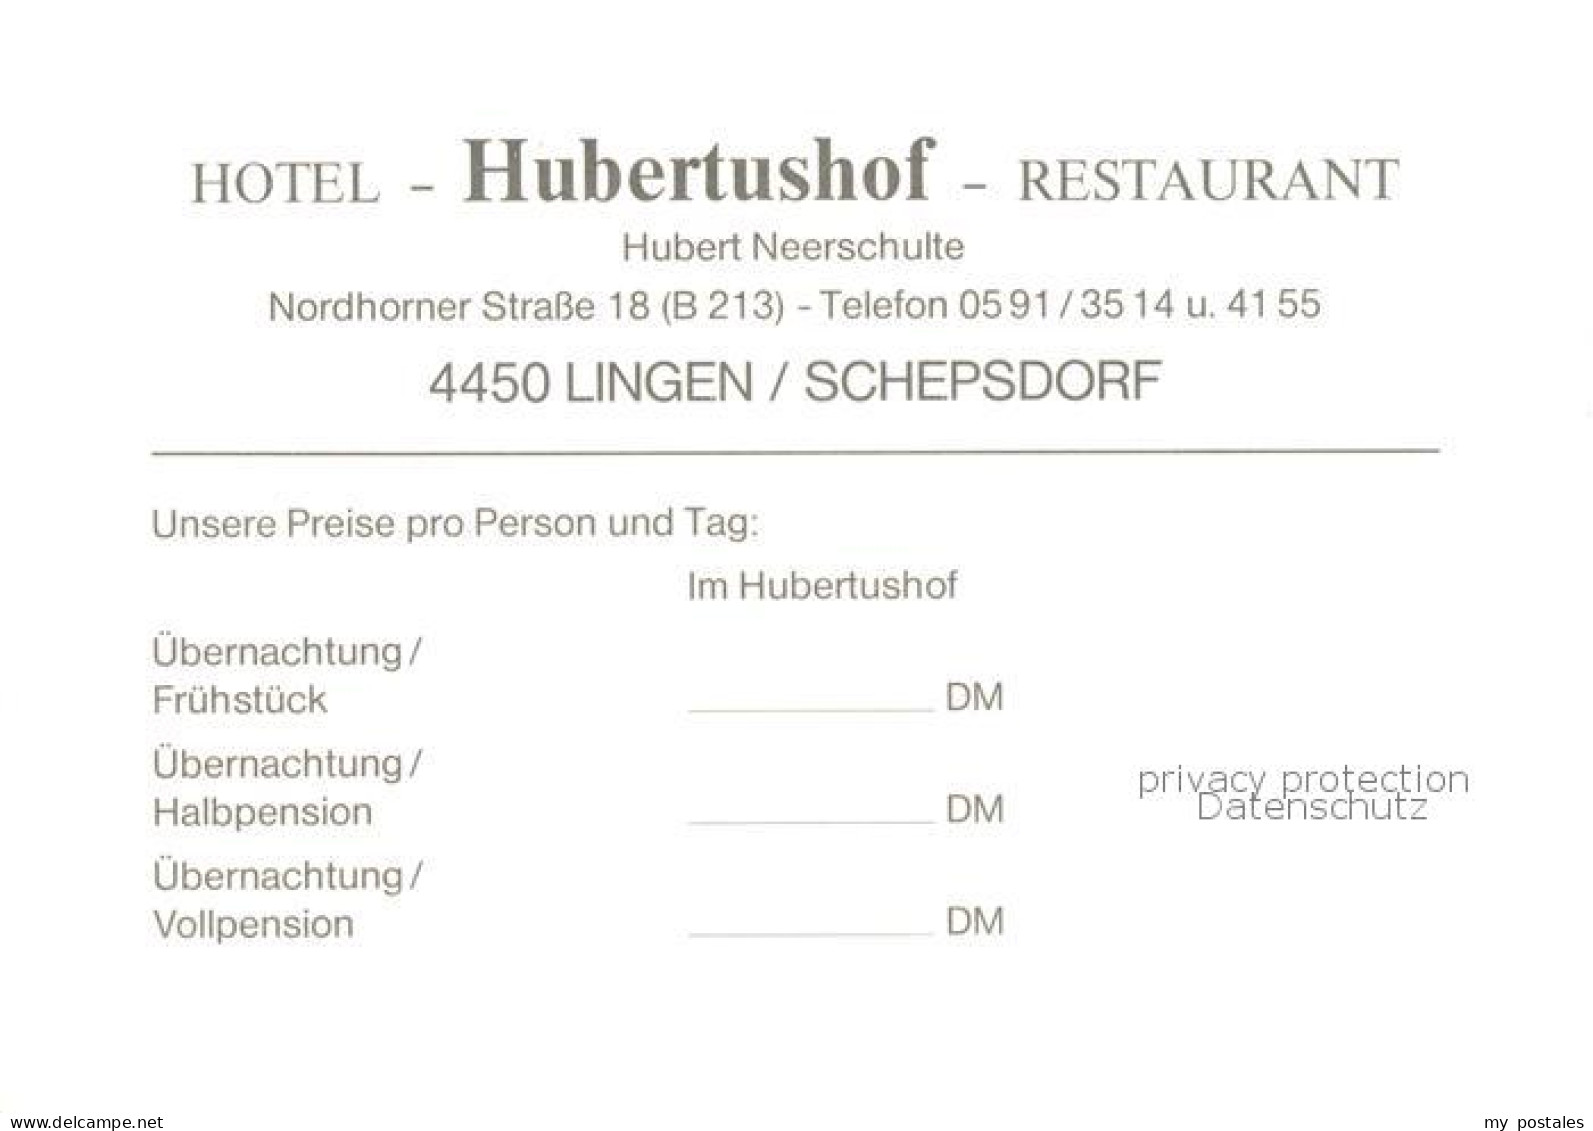 73847793 Schepsdorf Hotel Restaurant Hubertushof Schepsdorf - Lingen